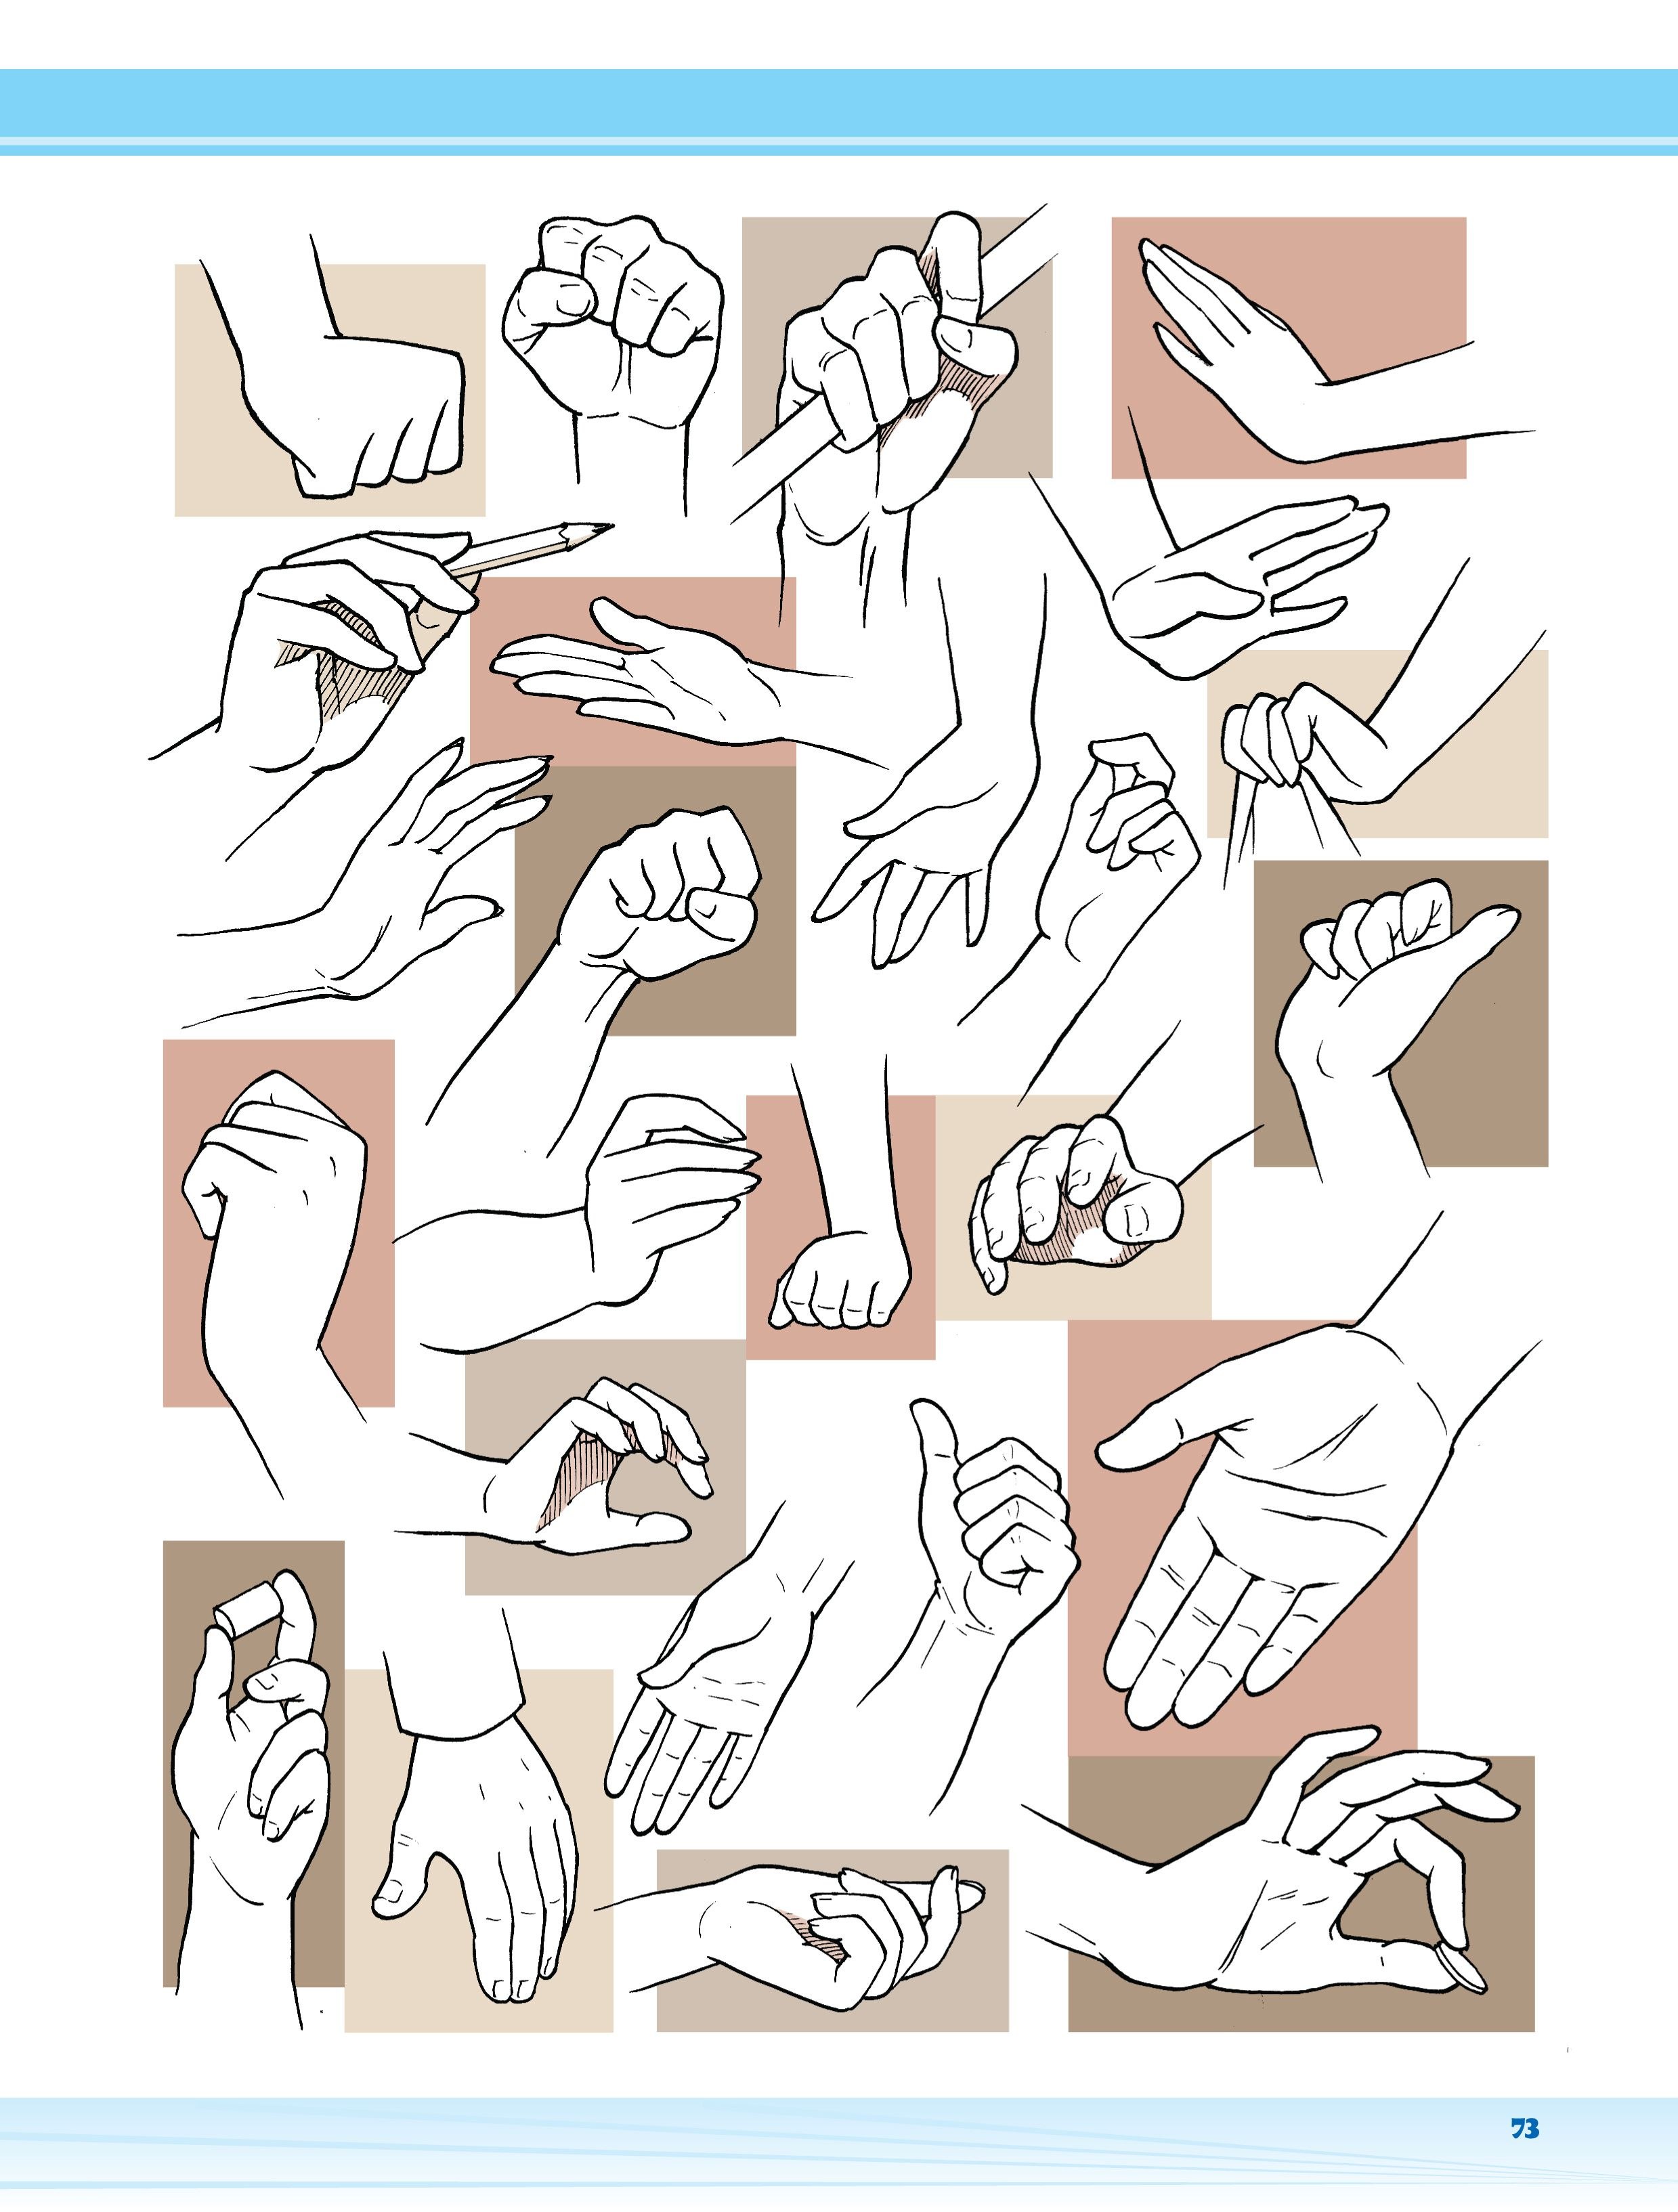 Местоположение рук. Рисование рук в разных положениях. Положение рук для рисования. Руки в разных положениях рисунки. Рука в разных полажения.